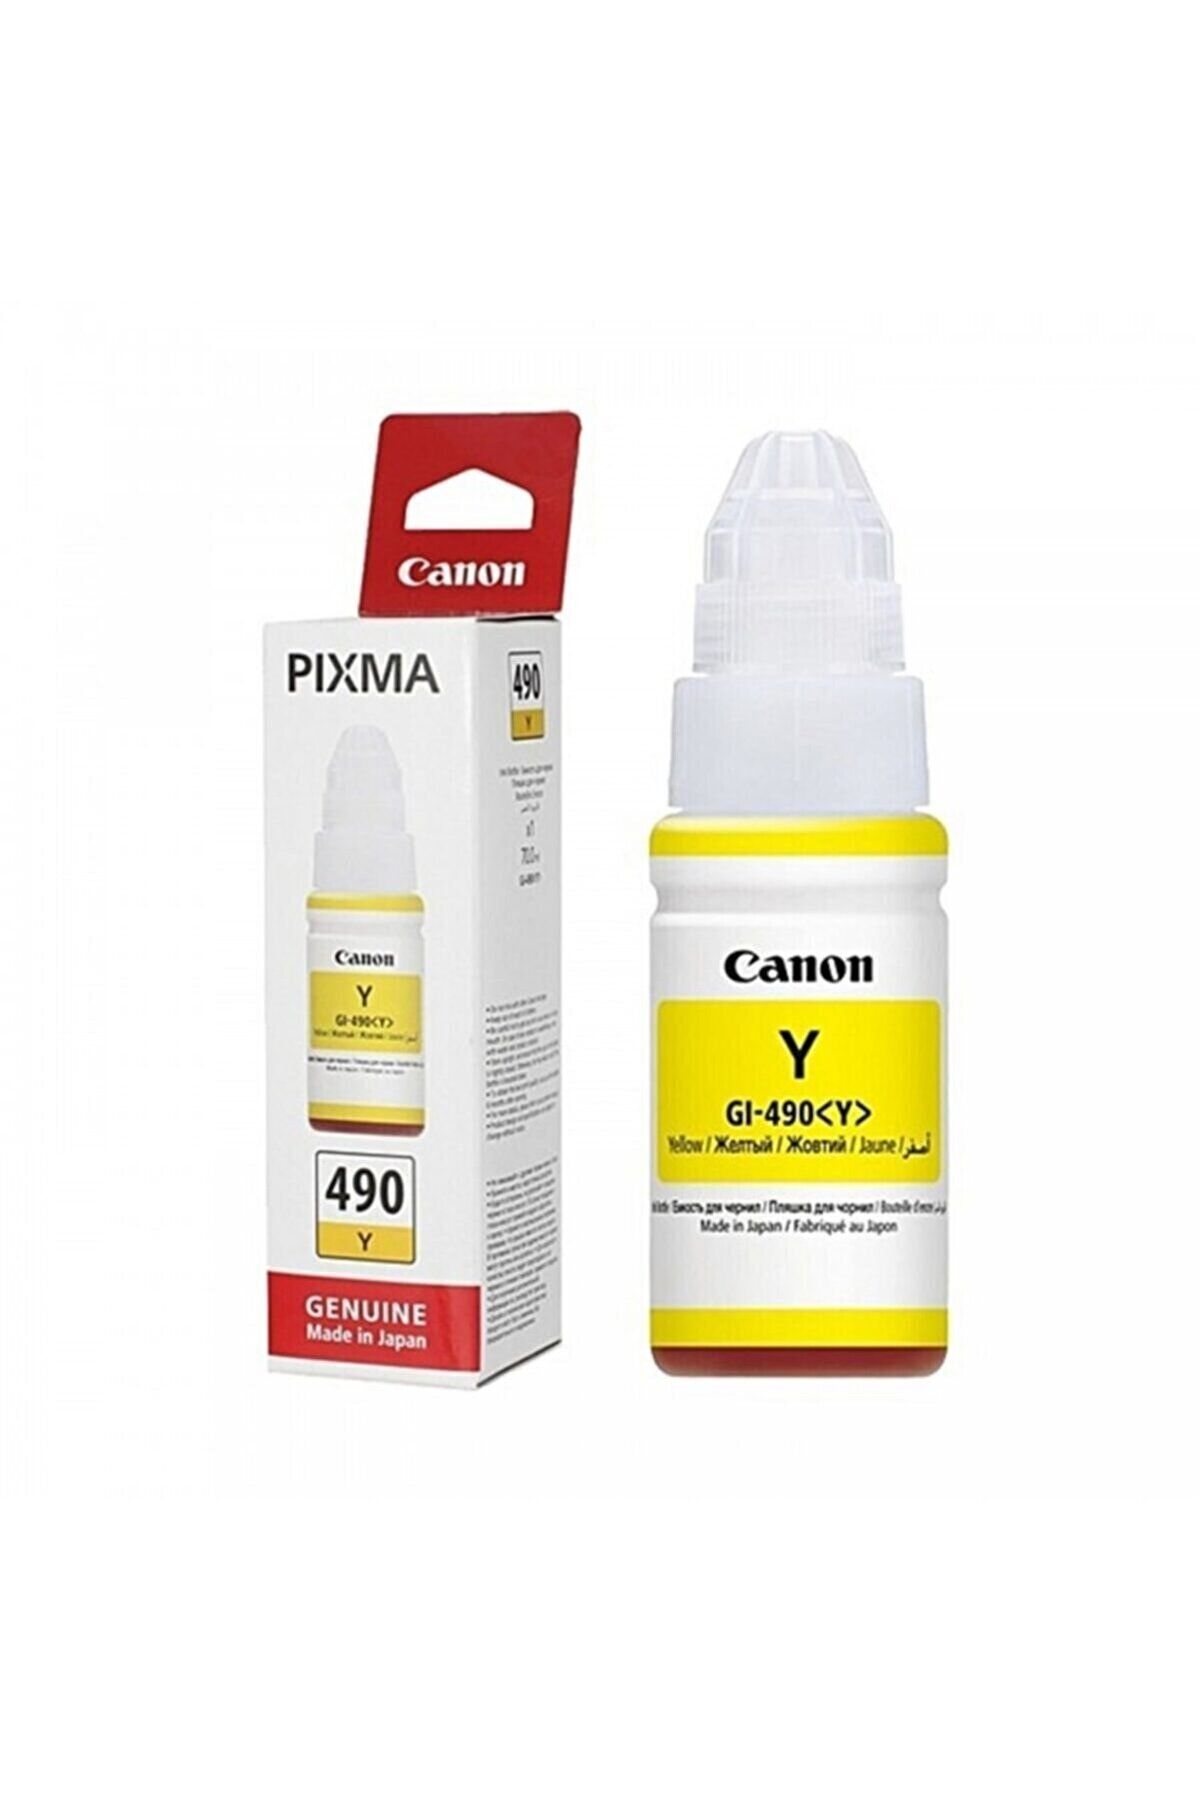 Canon Gı-490 Pixma G3400  sarı mürekkep kartuşu 70ml.